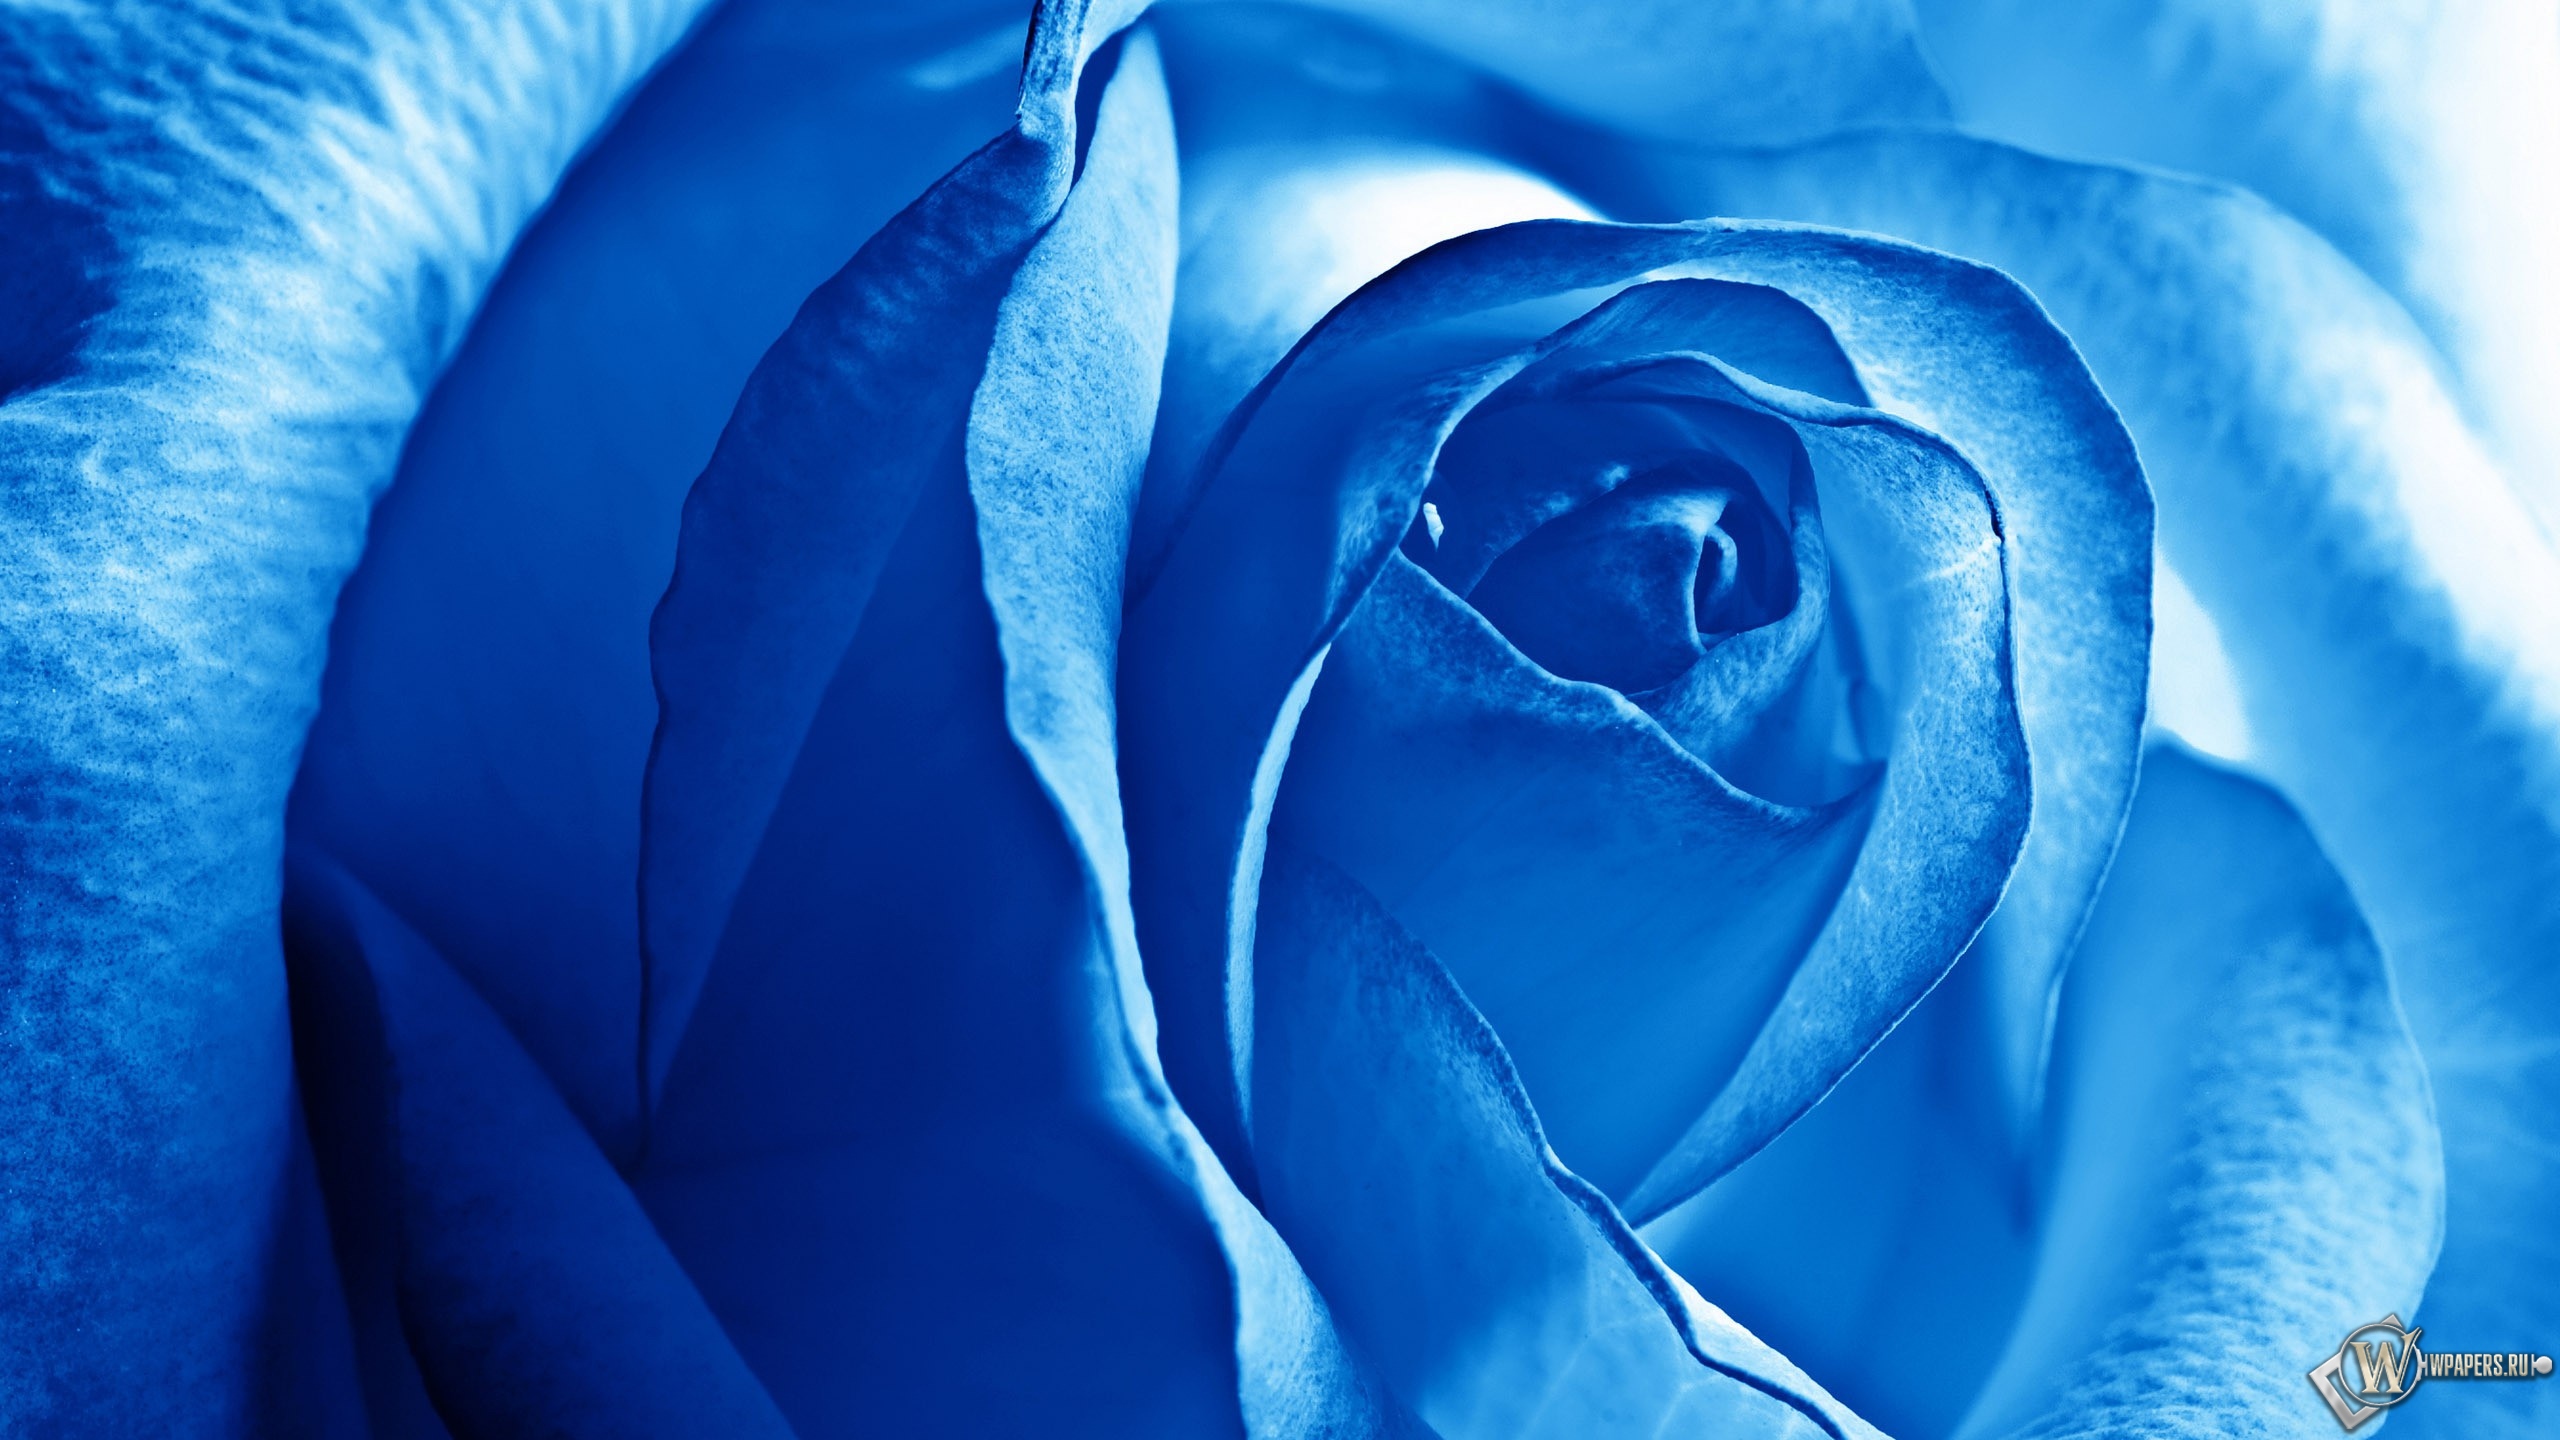 Роза синяя 2560x1440